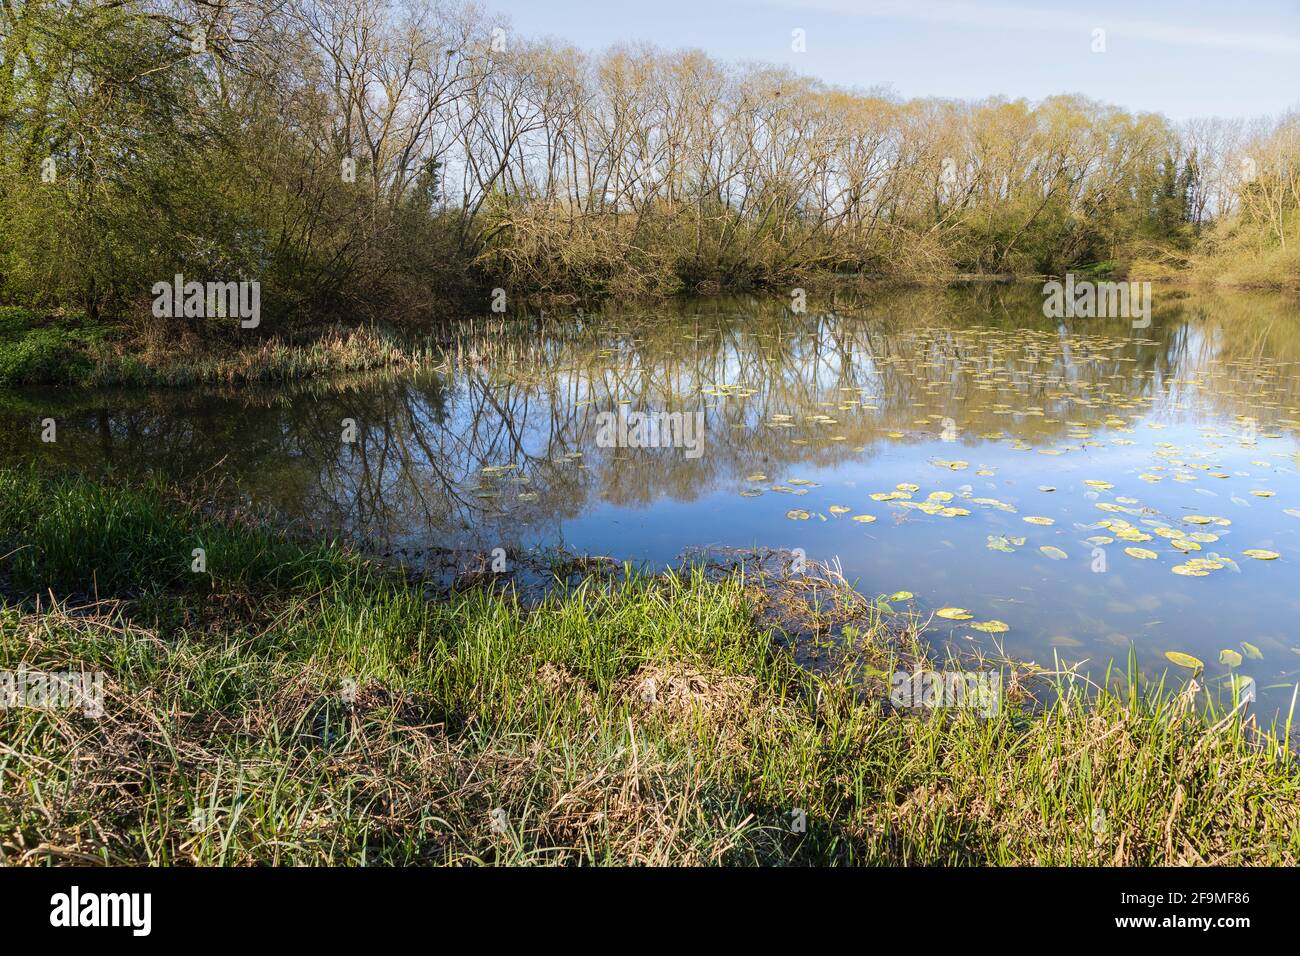 Une image de l'un des beaux lacs à arbres de Frisby Lakes, Leicestershire, Angleterre, Royaume-Uni. Banque D'Images